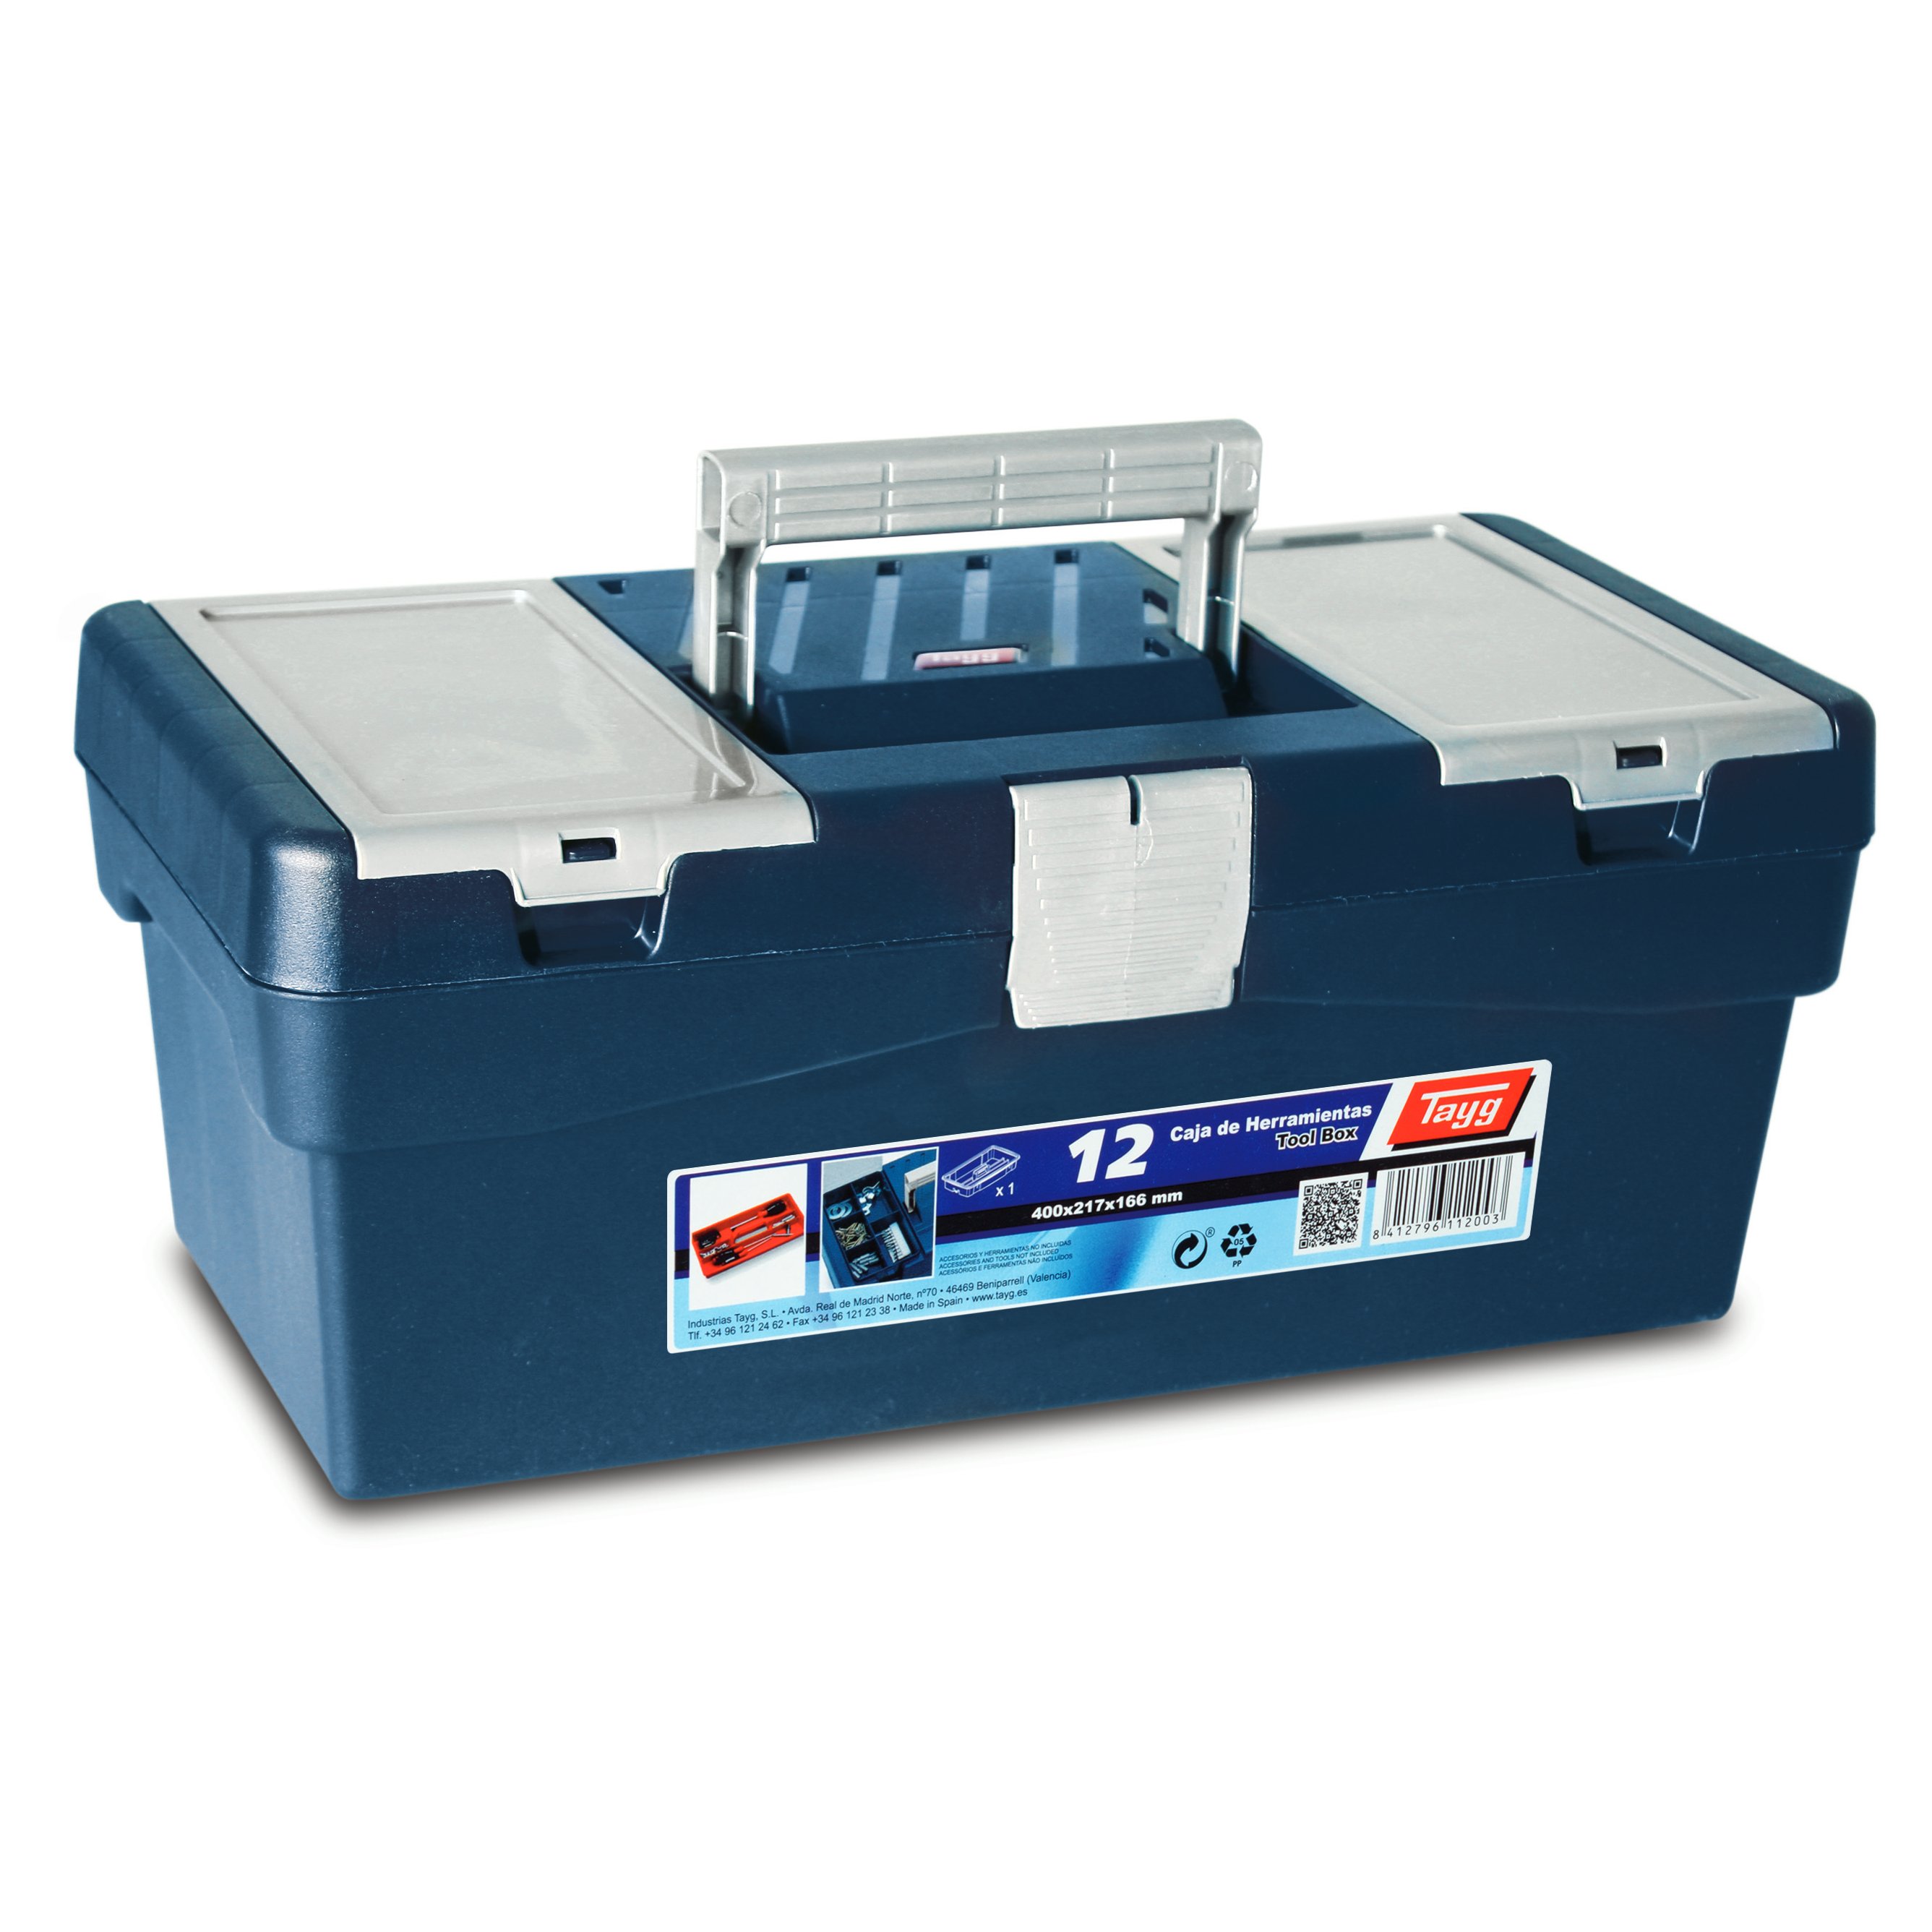 Ящик пластиковий для інструментів Tayg Box 12 Caja htas, 40х21,7х16,6 см, синій (112003) - фото 1